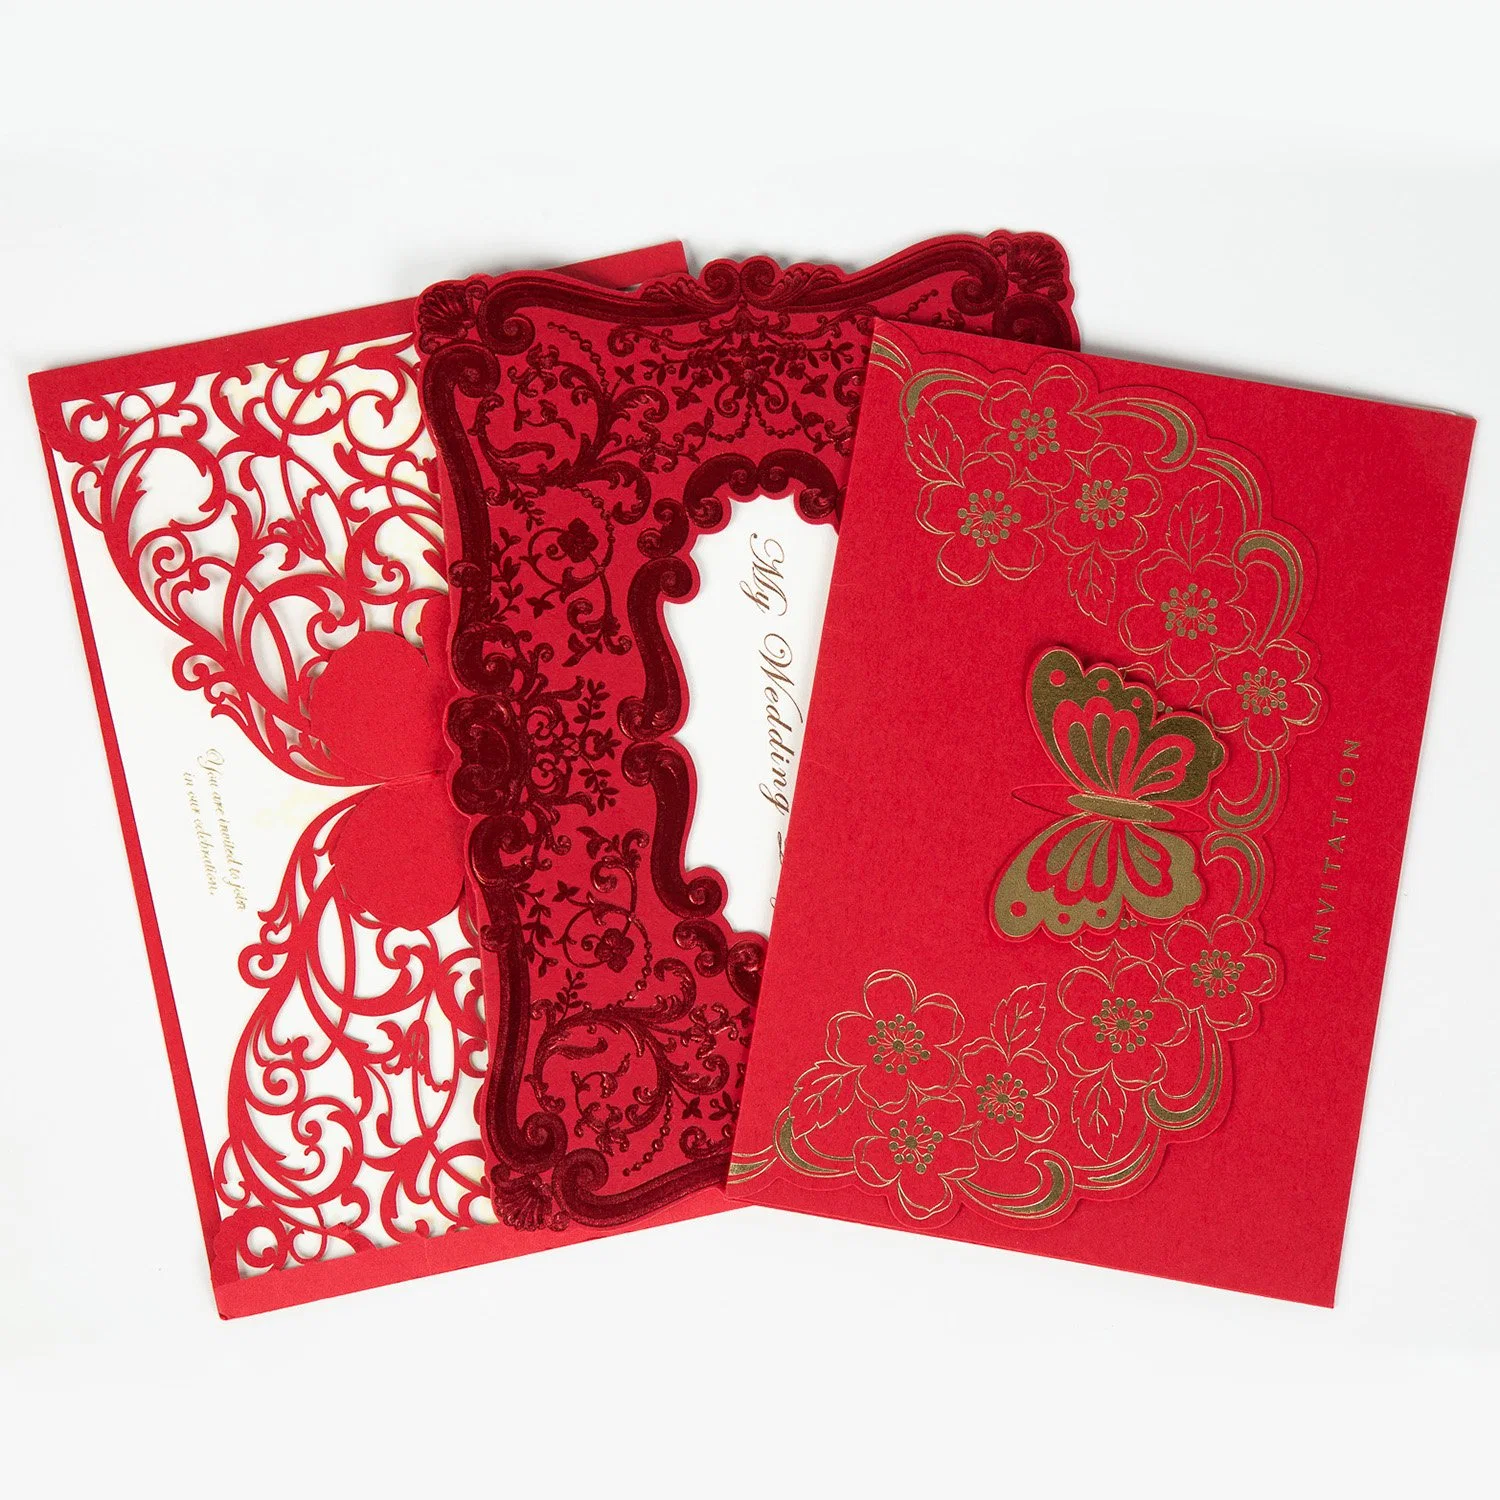 China Mayorista/Proveedor Nuevo Diseño Tarjeta de Mensaje Tallada Hueca Regalo Creativo Tarjetas de Felicitación Postales Invitaciones de Boda Tarjeta de Invitación de Año Nuevo Cumpleaños Fiesta.